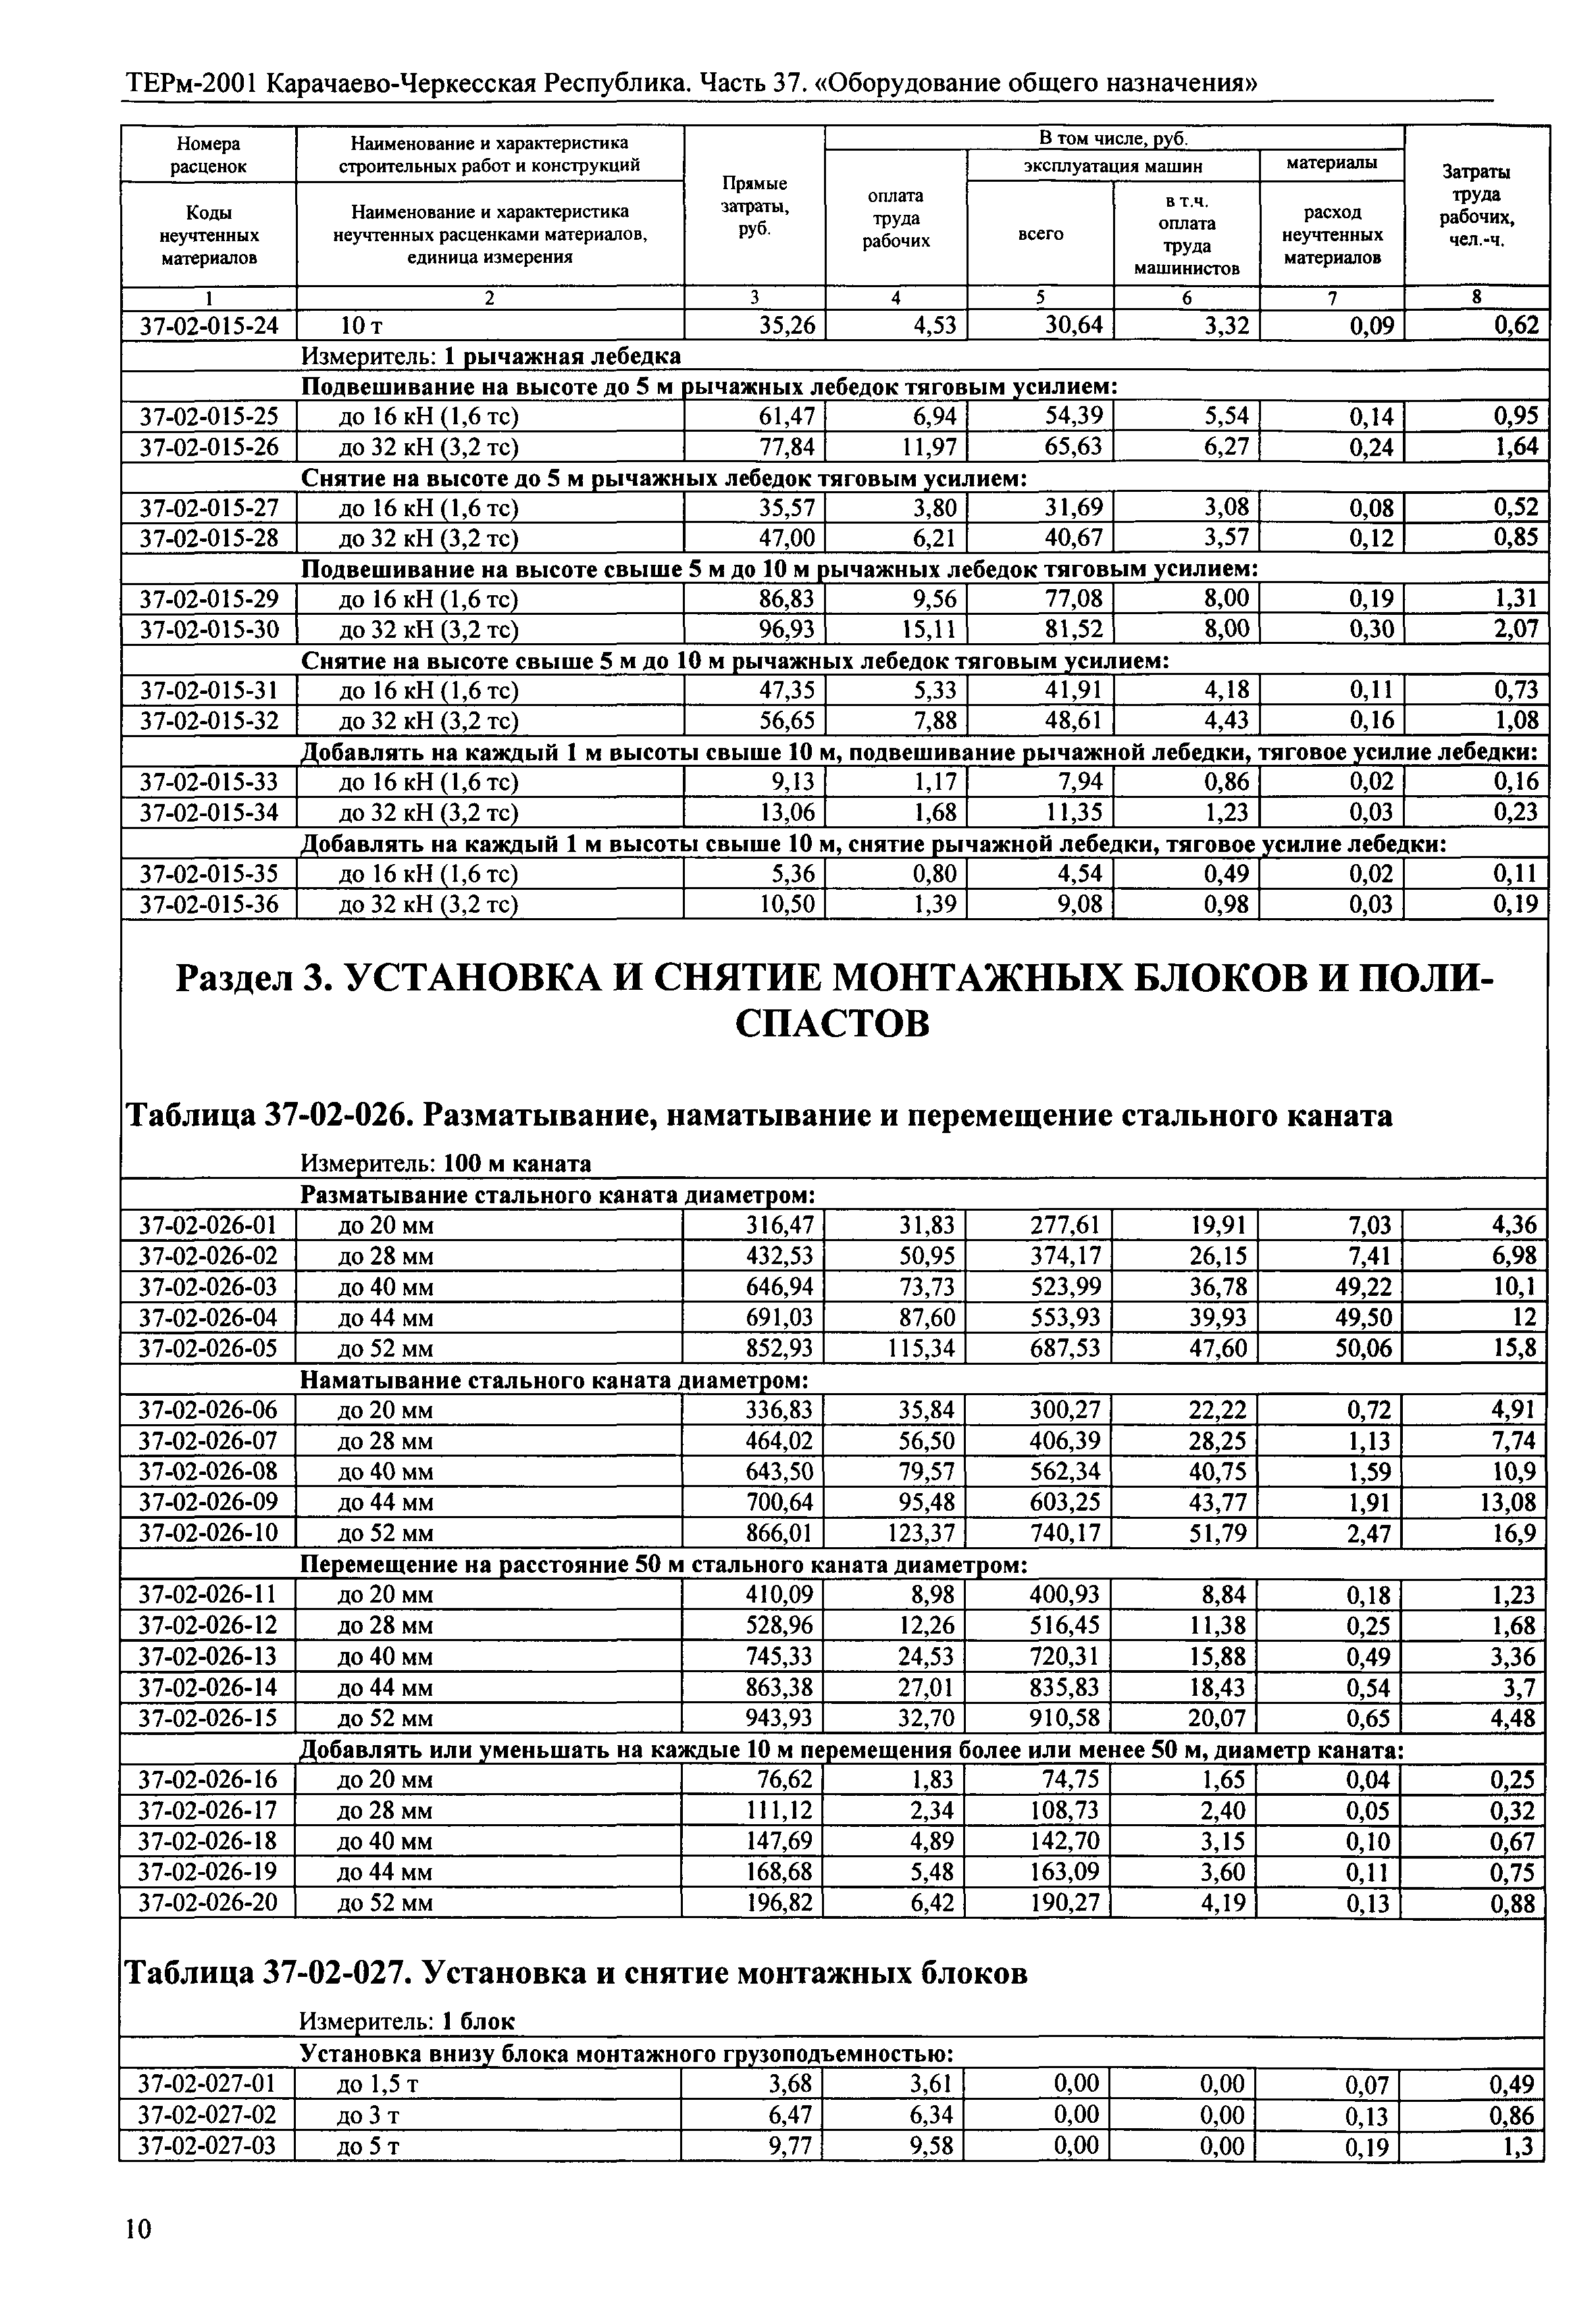 ТЕРм Карачаево-Черкесская Республика 37-2001